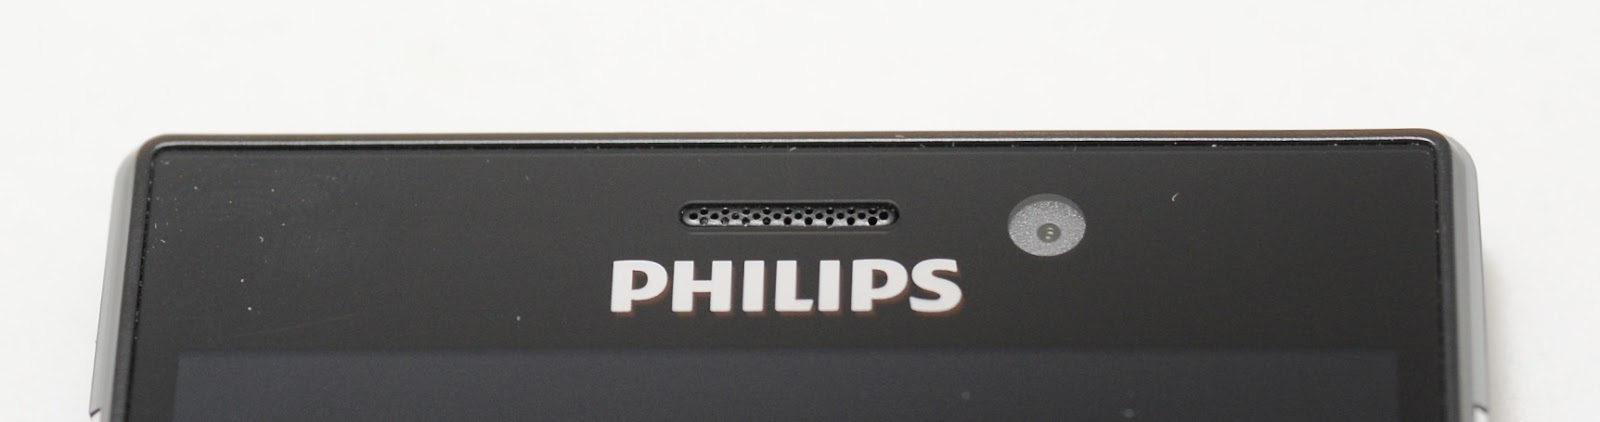 Обзор Philips Xenium V787: долгоиграющая рабочая лошадка - 3